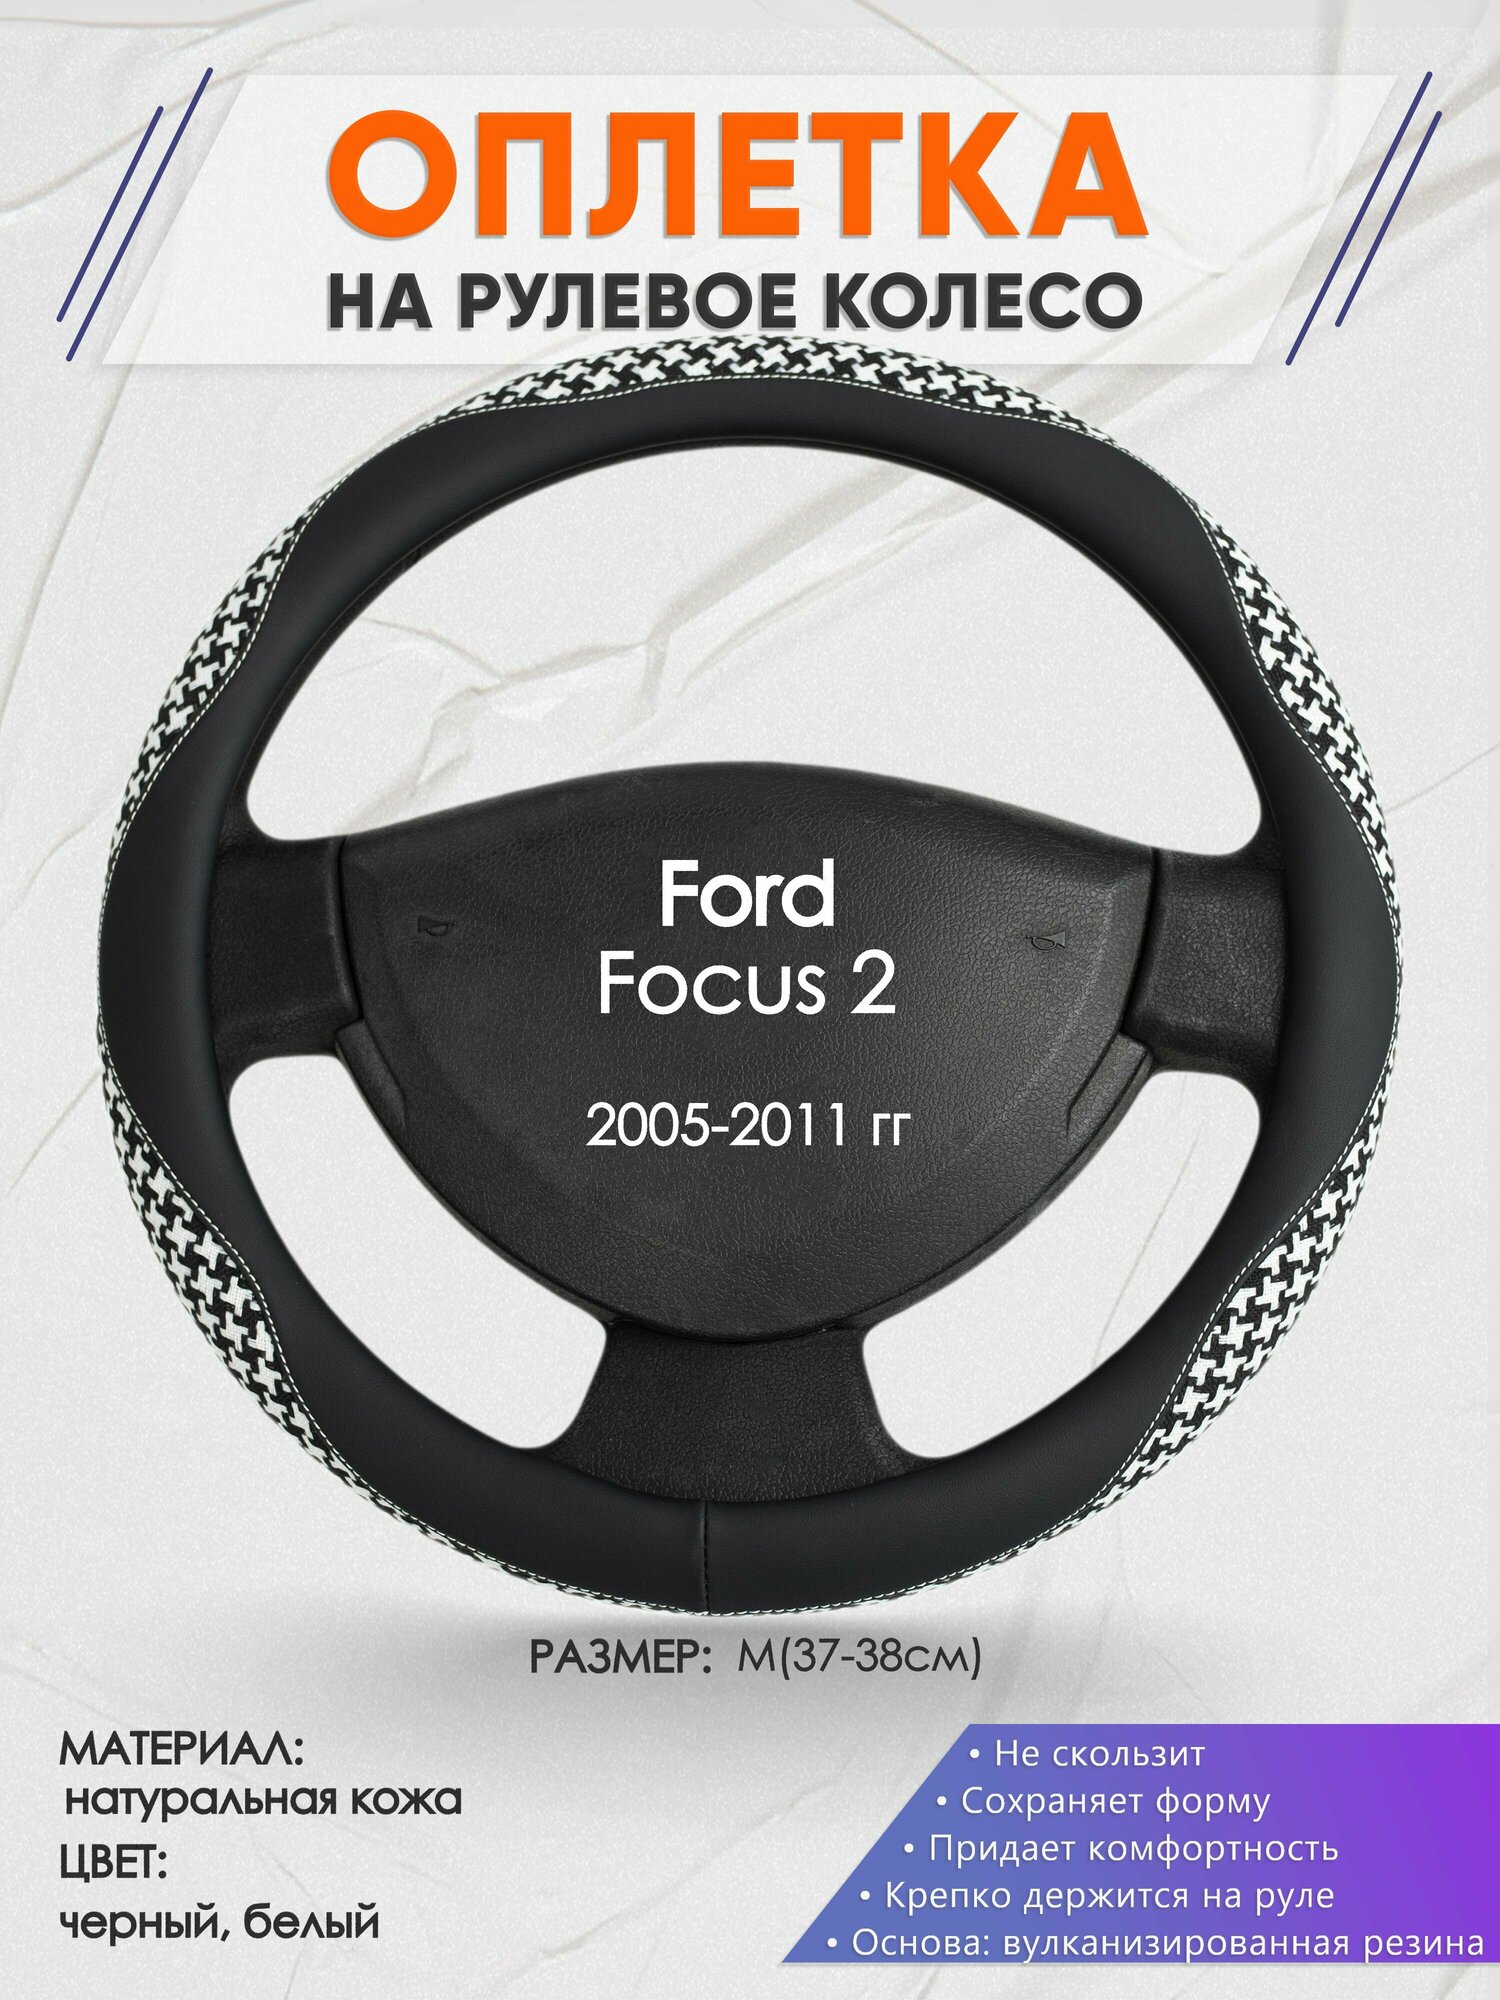 Оплетка на руль для Ford Focus 2(Форд Фокус 2) 2005-2011, M(37-38см), Натуральная кожа 21